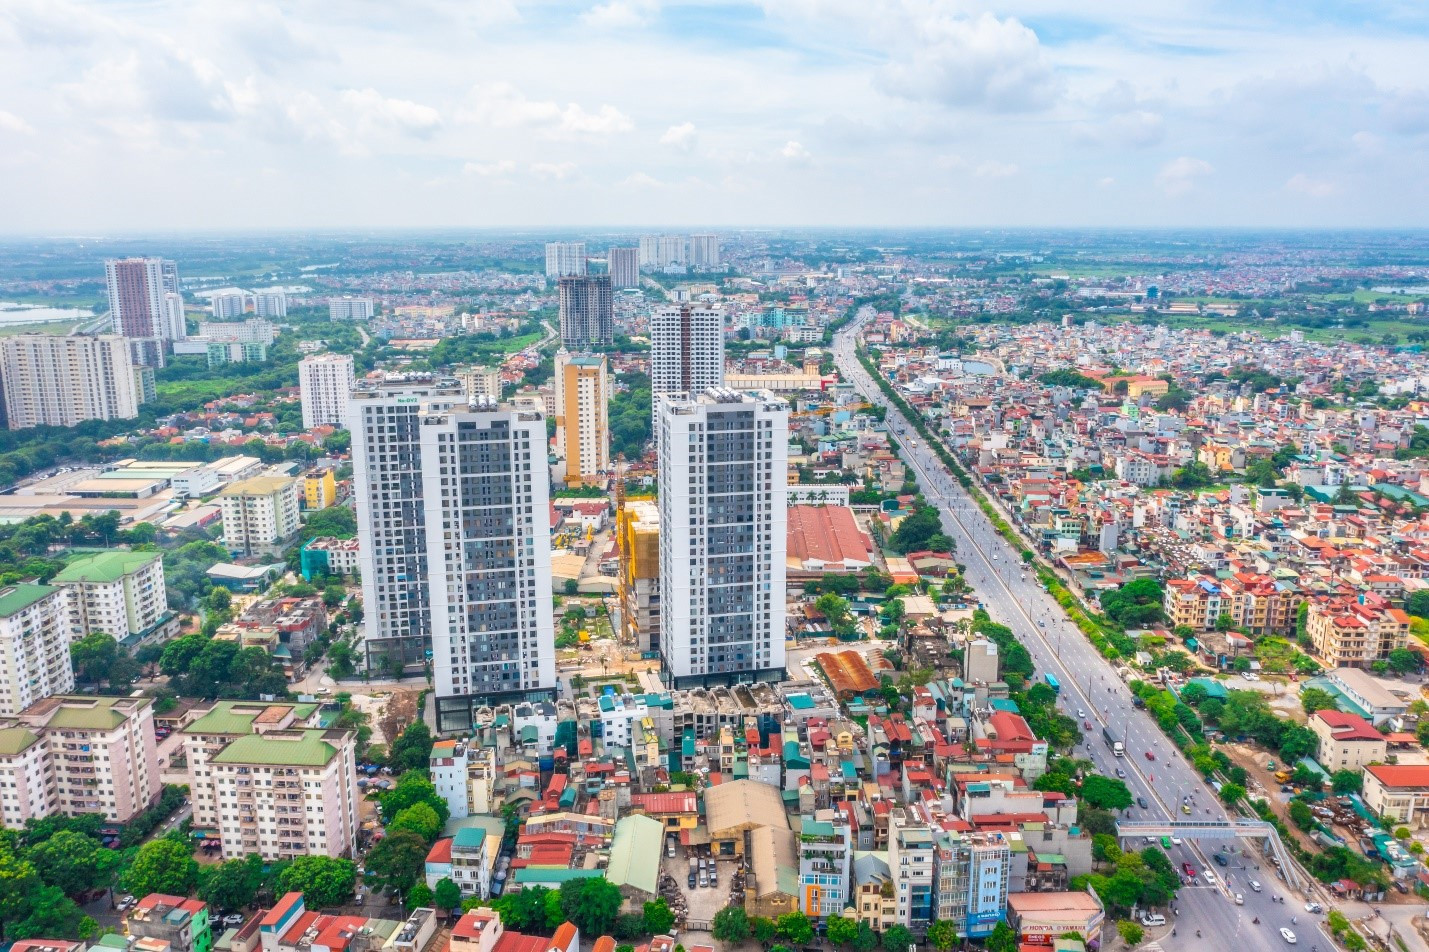 Thống kê của CBRE cho thấy, lượng căn hộ mở bán mới căn hộ chung cư tại Hà Nội sẽ cải thiện, với hơn 6.300 căn được mở bán.